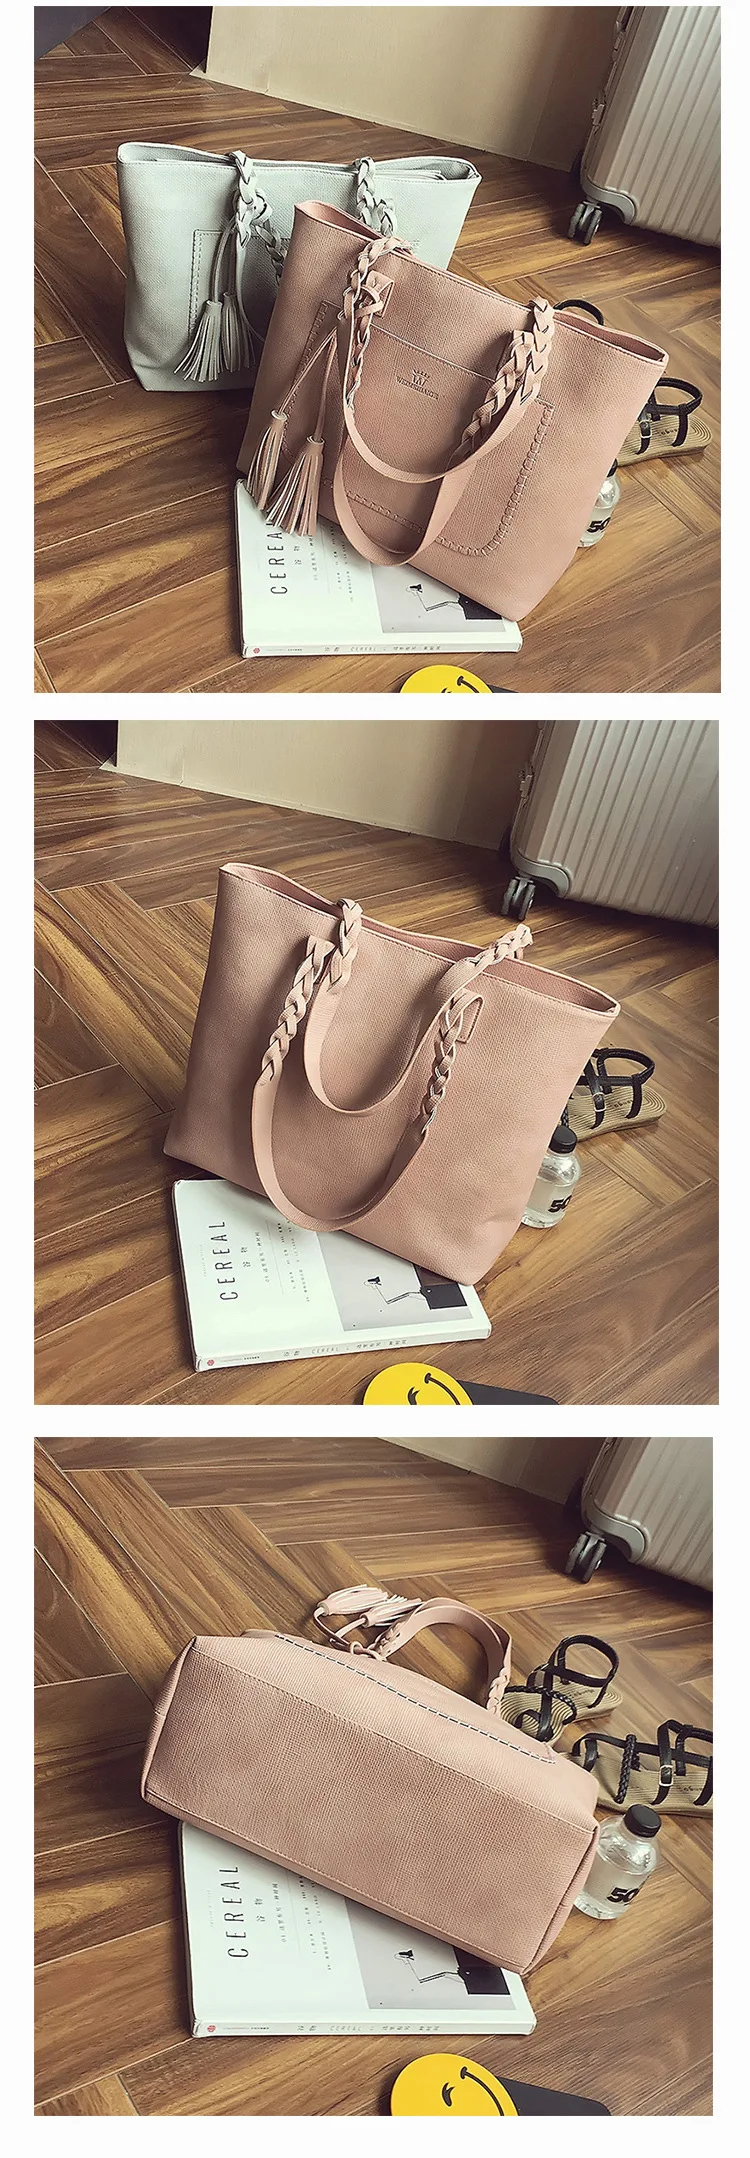 YBYT брендовая сумка на плечо с кисточками, Женская винтажная сумка из искусственной кожи, дамская модная сумка на плечо, кошелек, повседневные сумки для ежедневных покупок